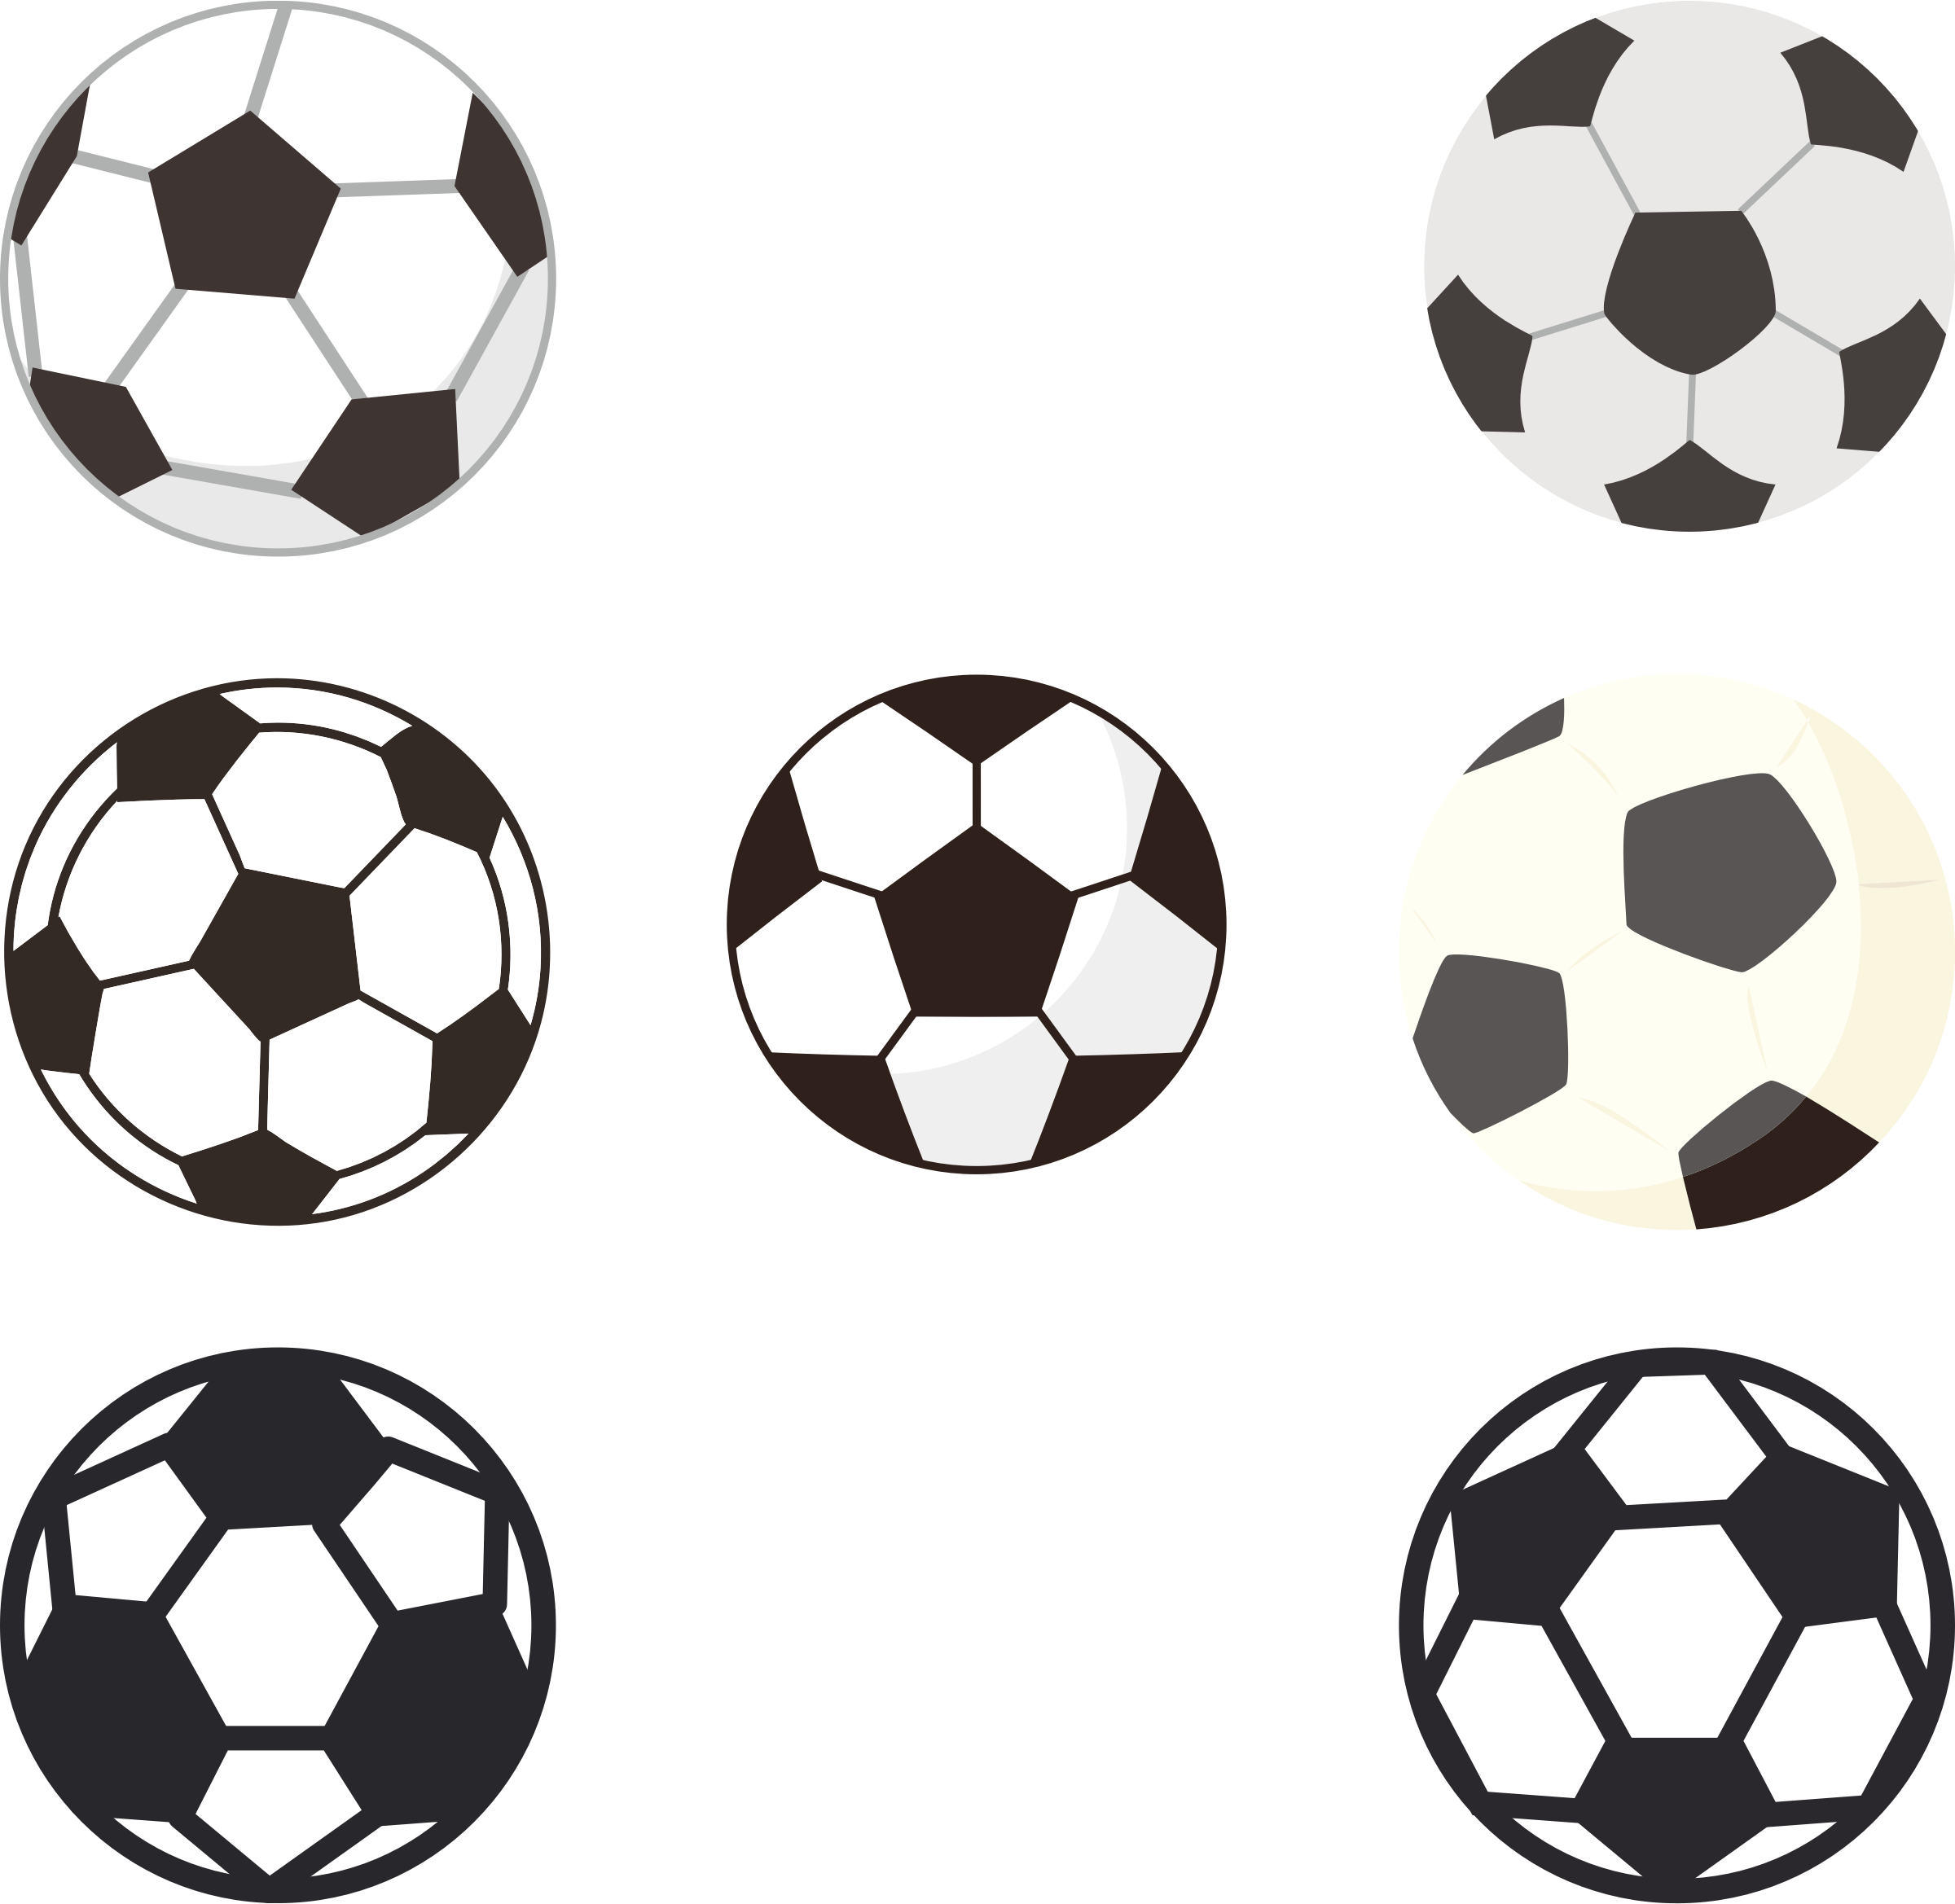 Varietyof Soccer Balls Illustration